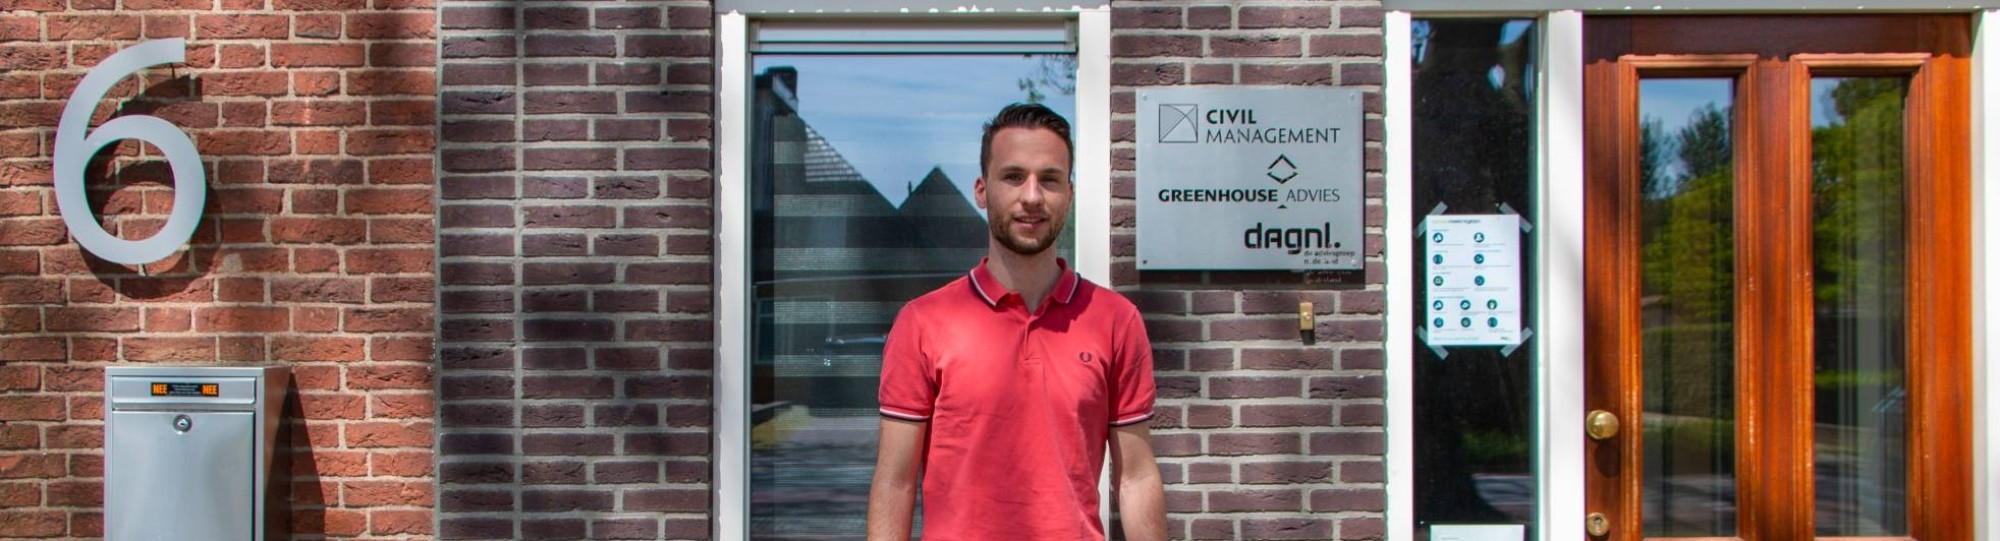 296546 Civiele techniek, Stijn Wijers voor het pand van Civil Management, Greenhouse Advies en DagNL.